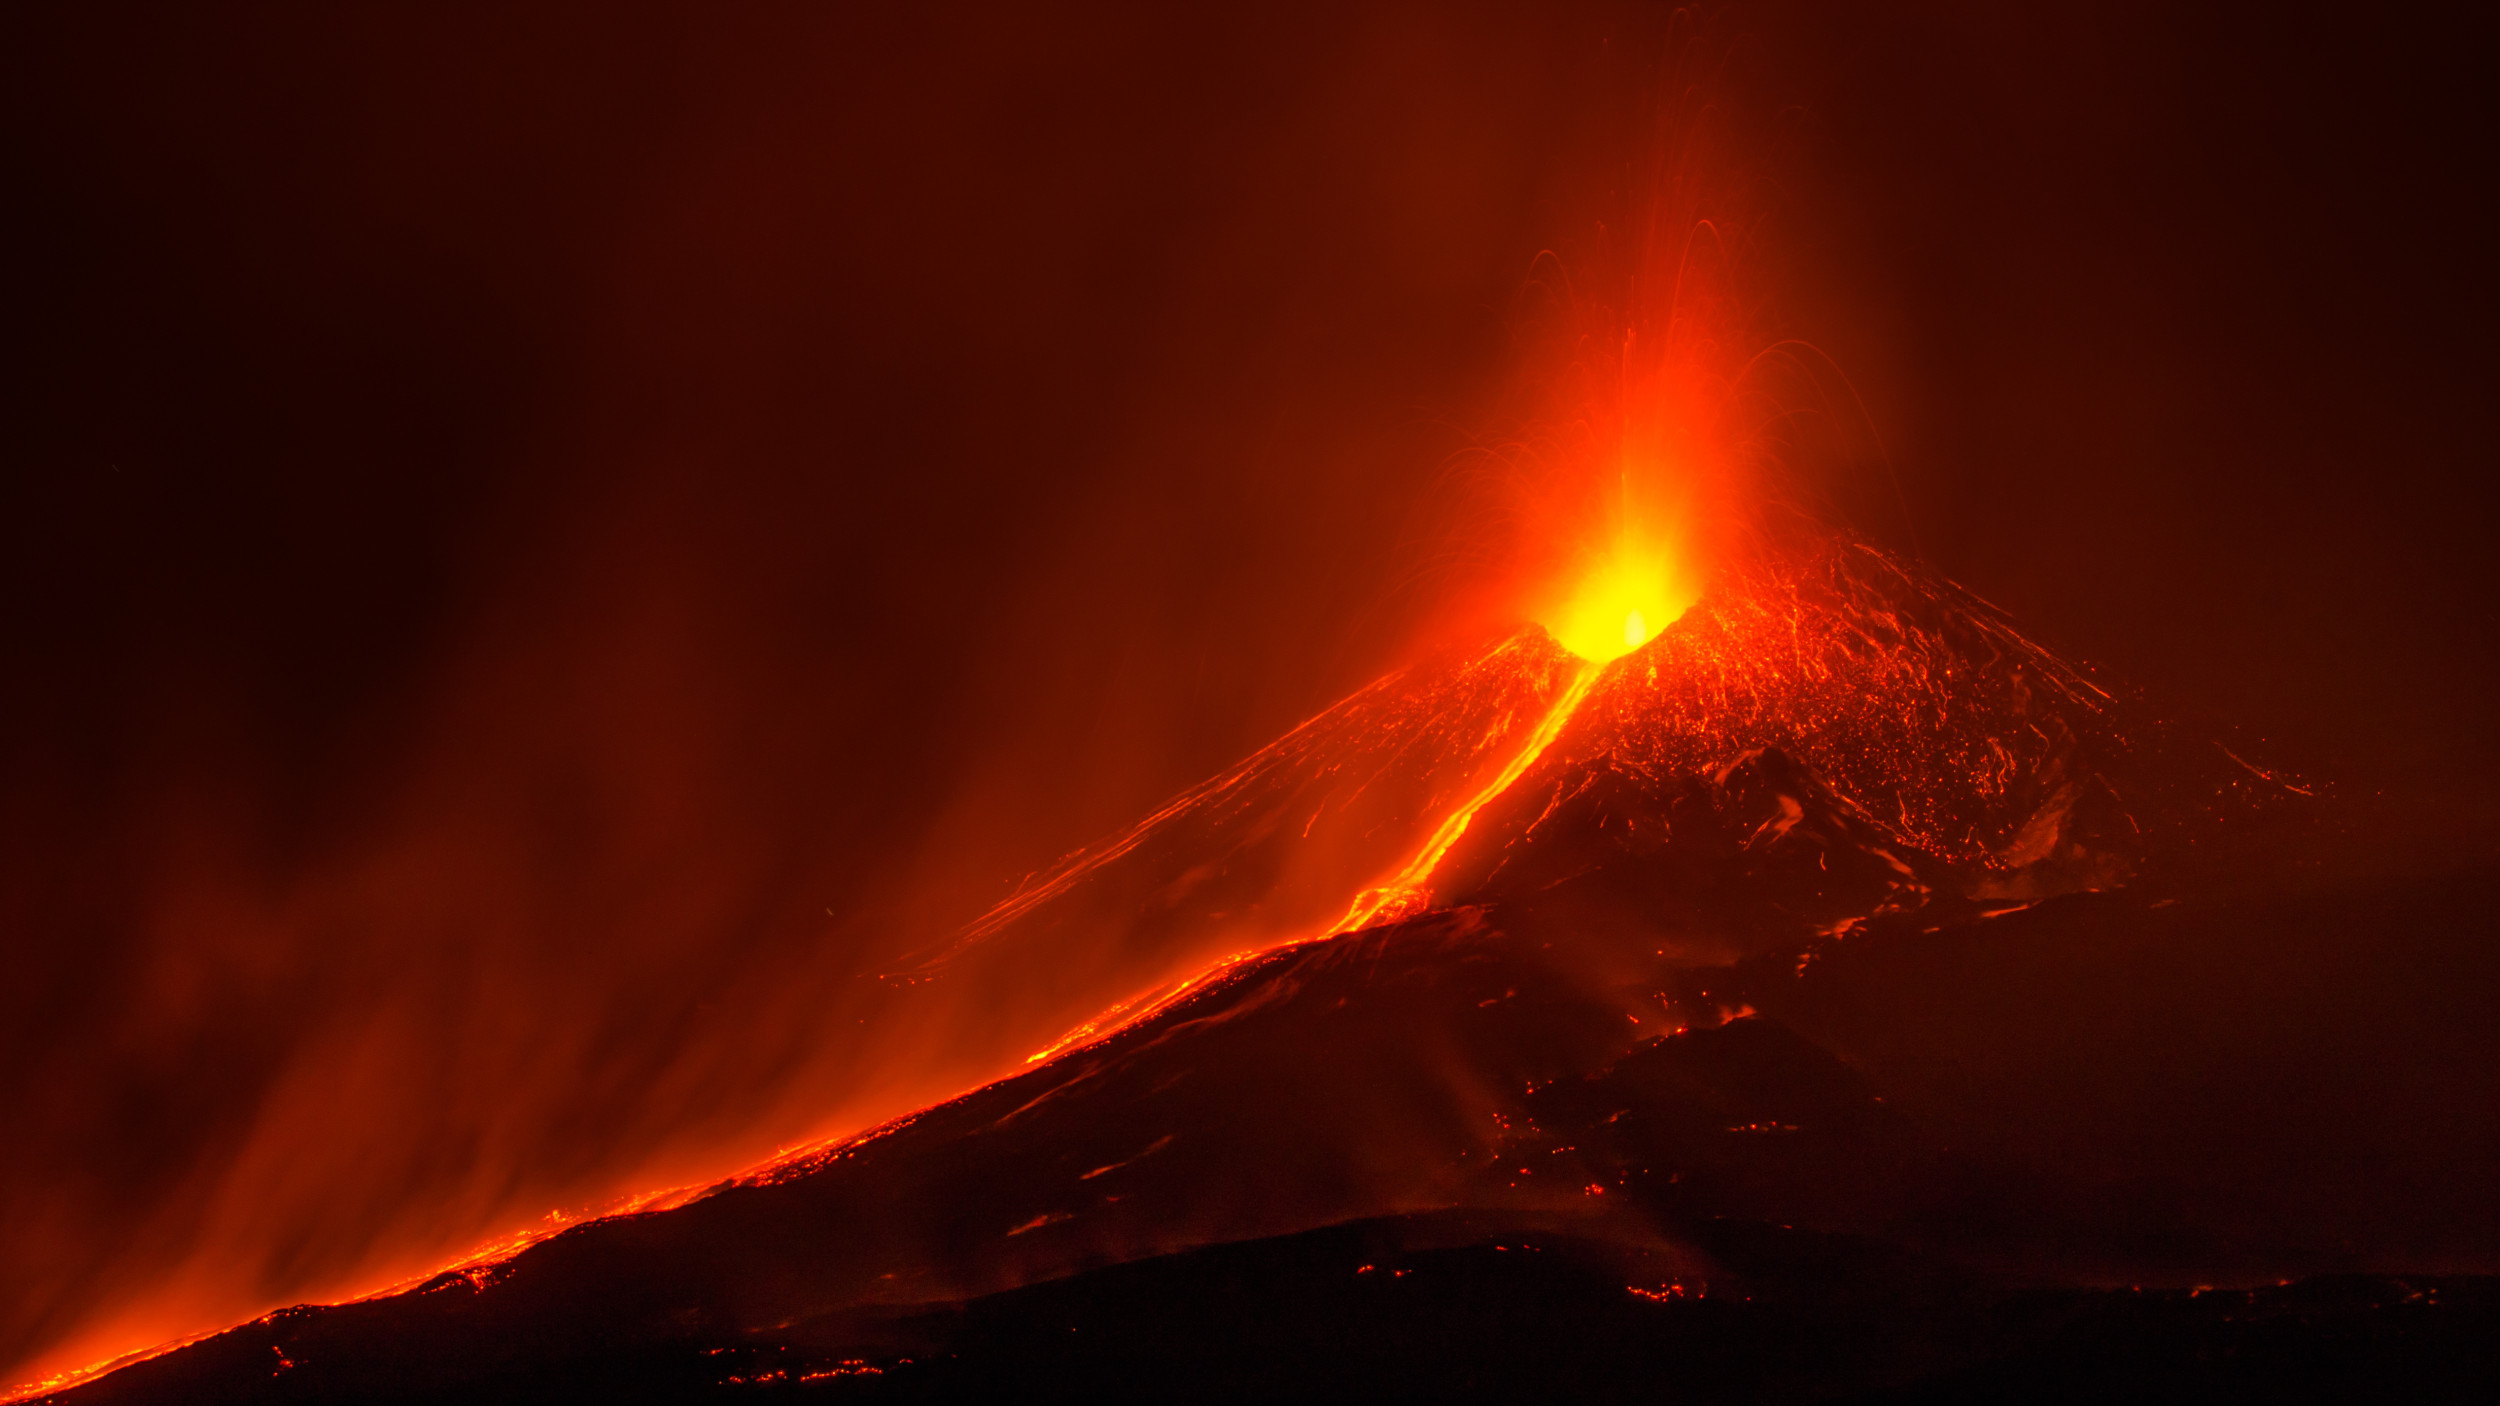 Comment regarder l’éruption volcanique de l’Etna en direct